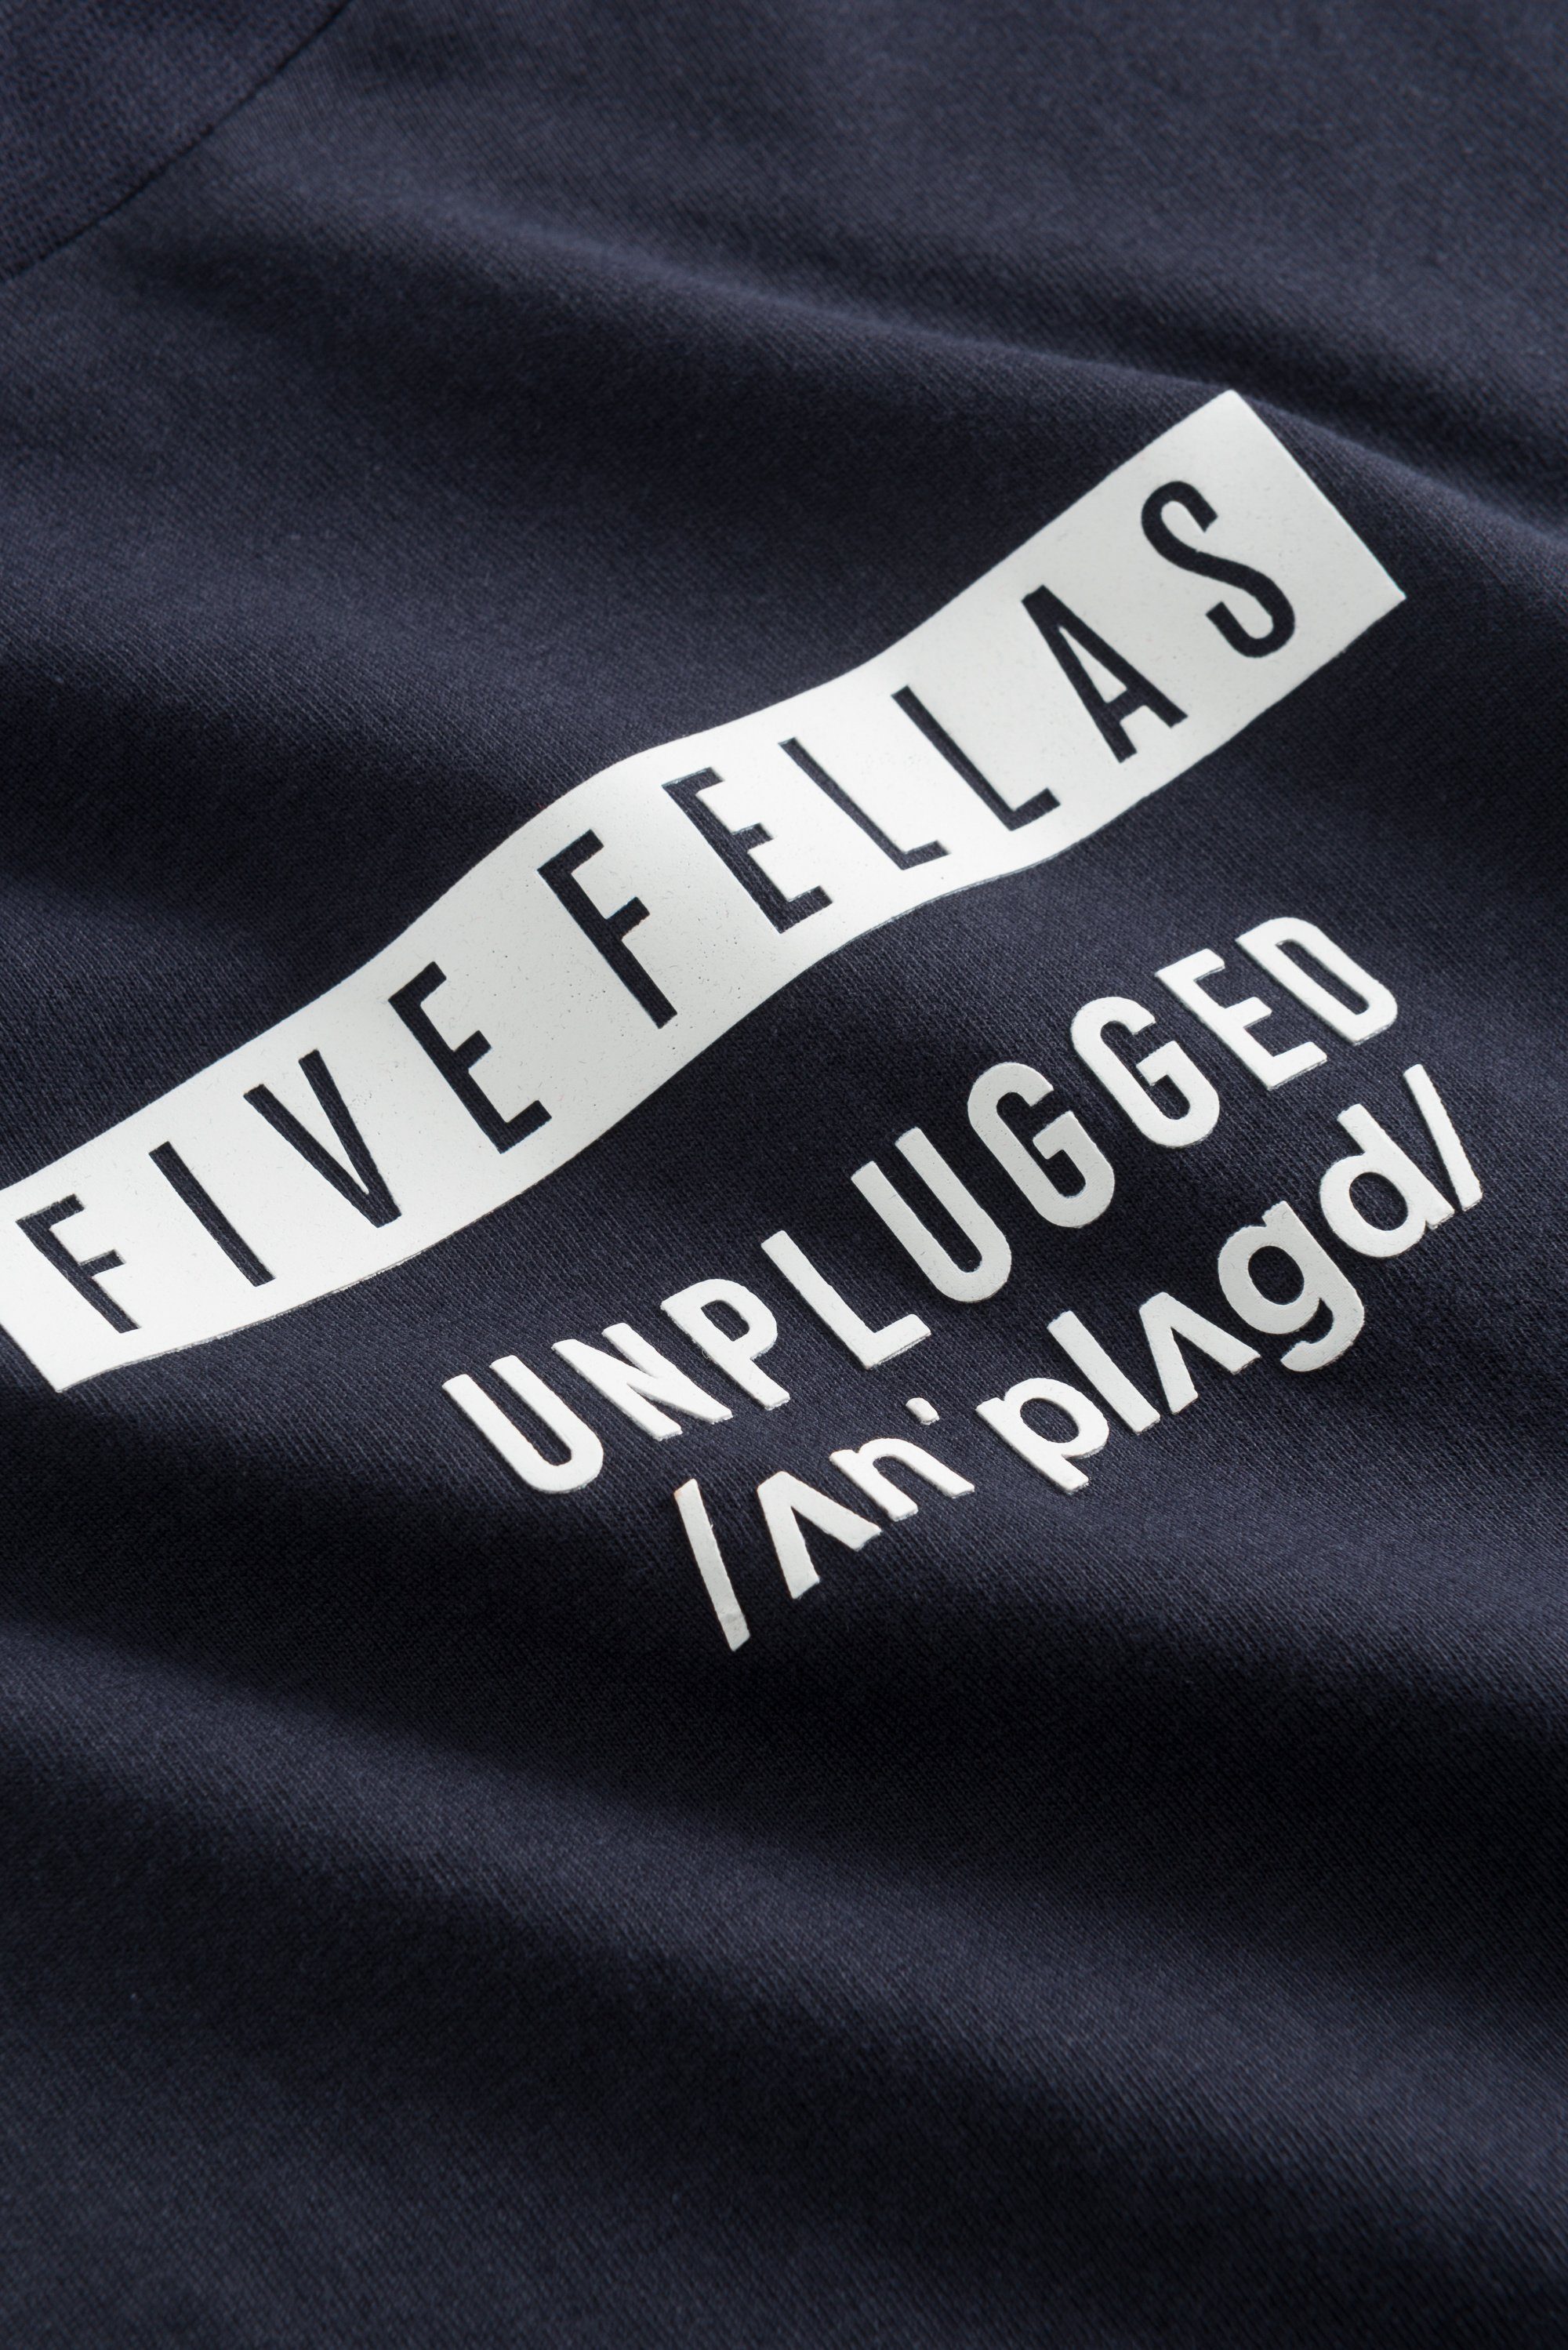 FIVE Print FELLAS 500 navy T-Shirt LUCA 3D